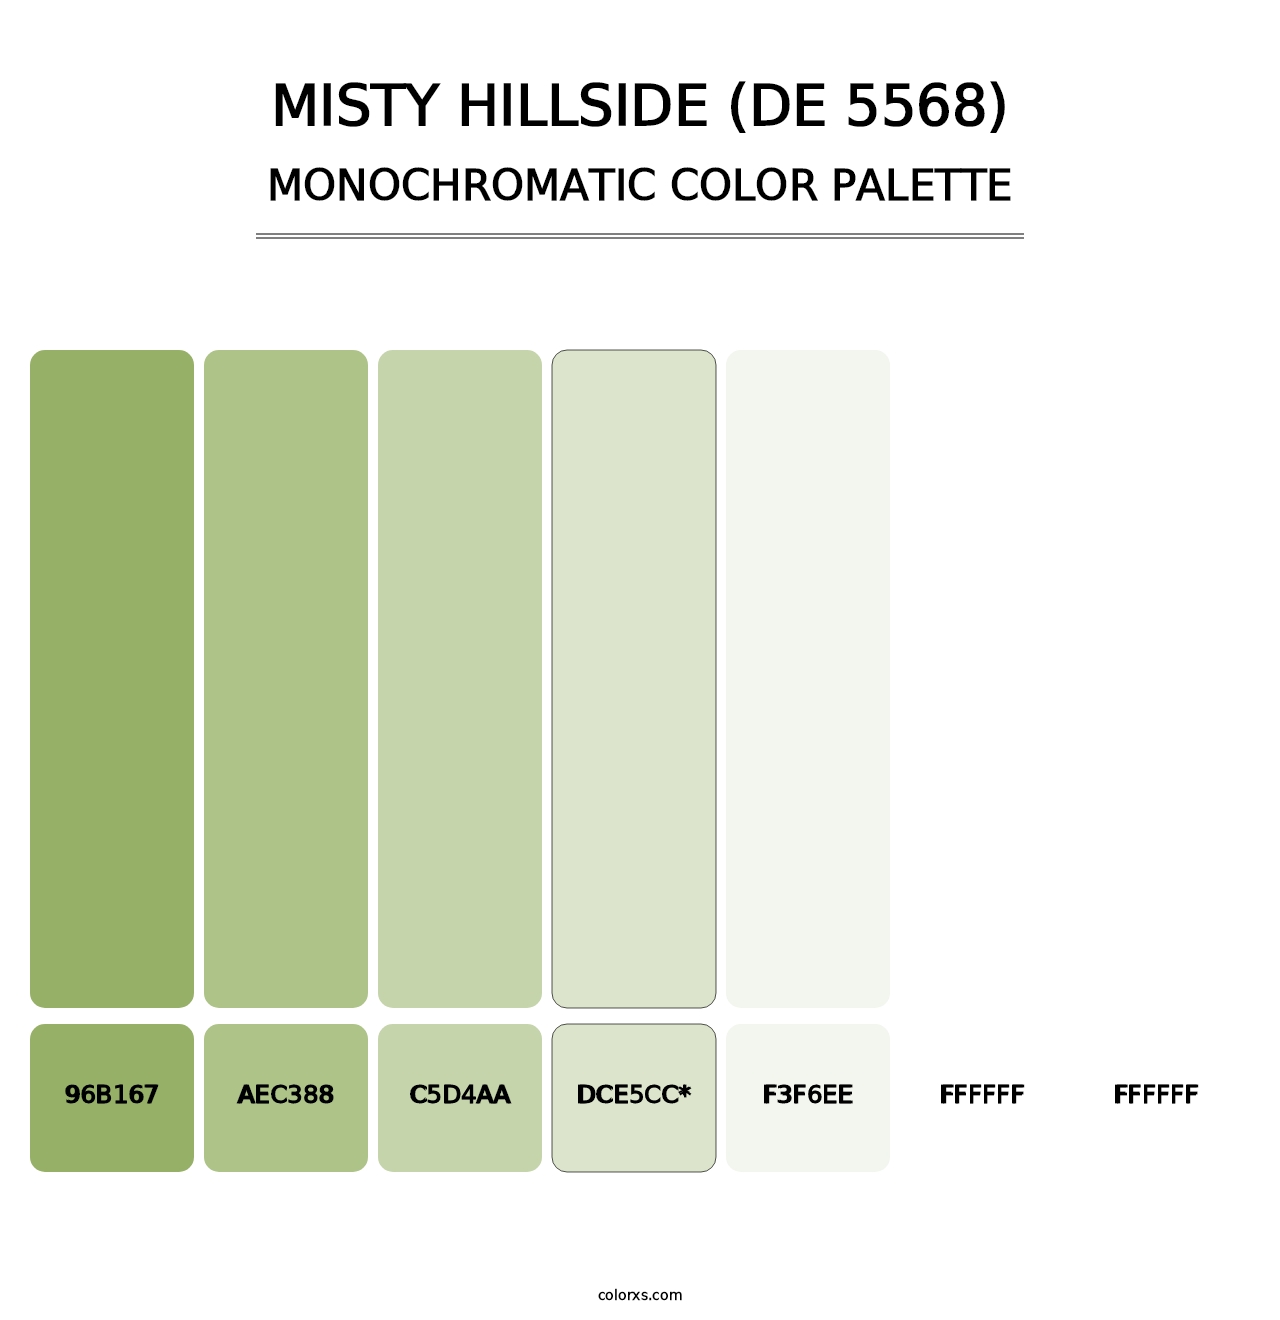 Misty Hillside (DE 5568) - Monochromatic Color Palette